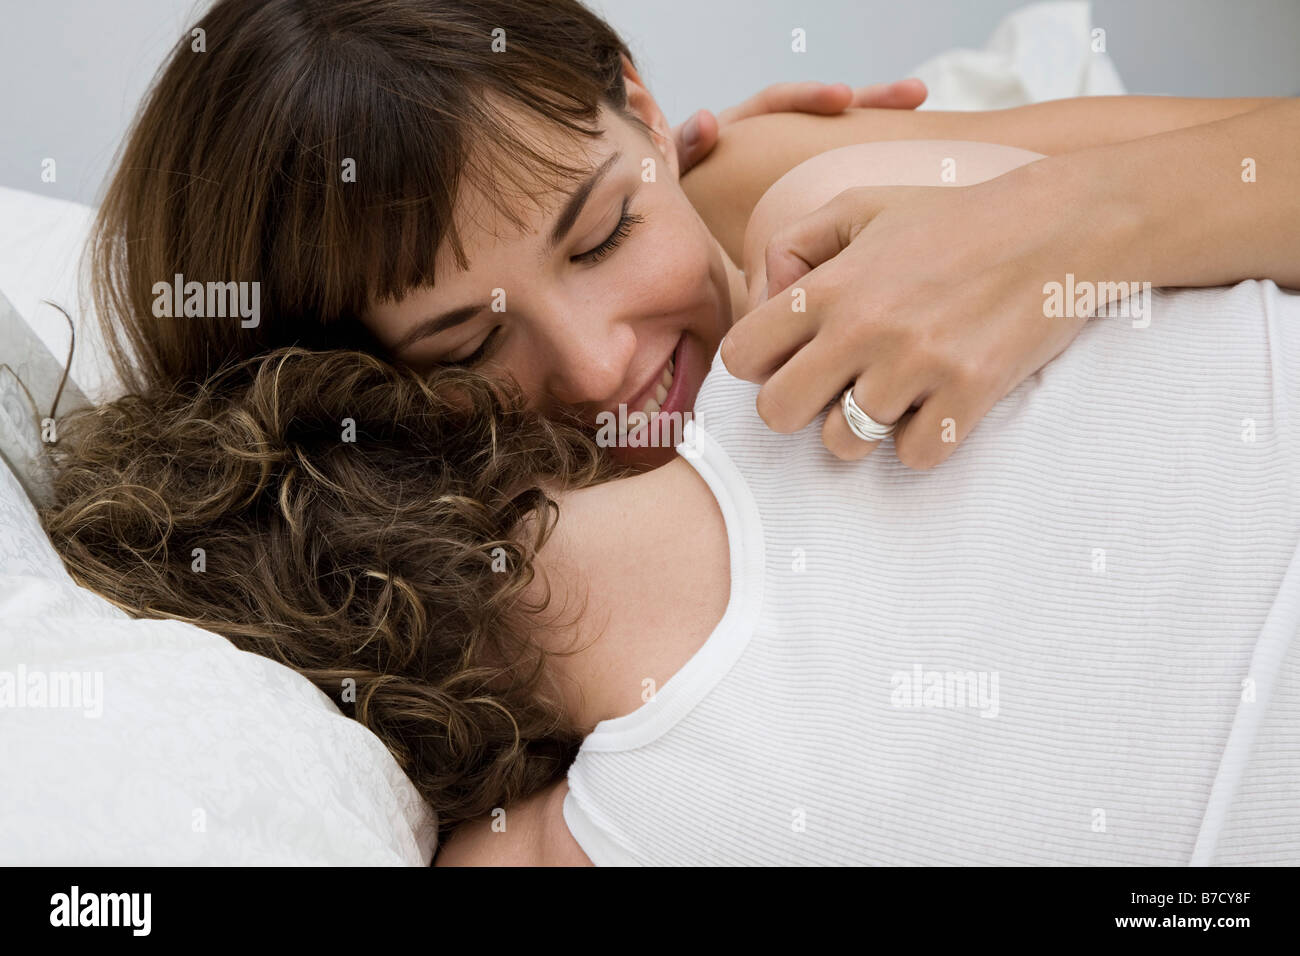 Un couple couché et embrassant Banque D'Images